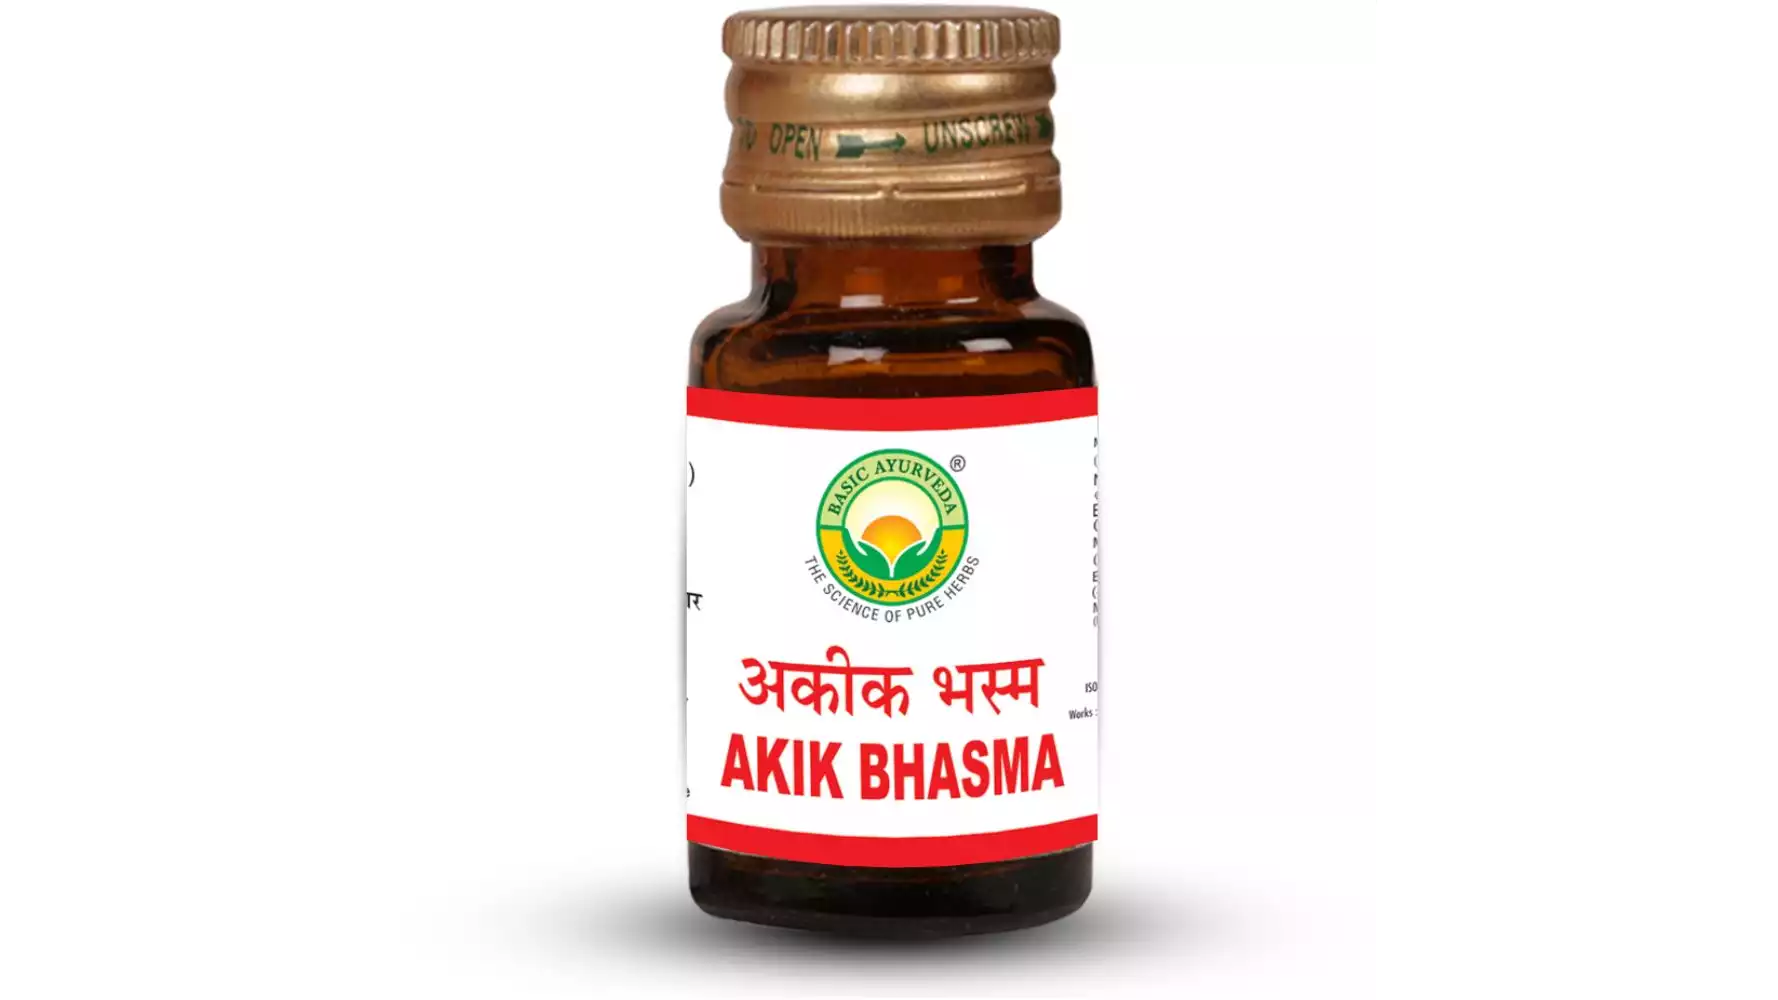 Basic Ayurveda Akik Bhasma (5g)